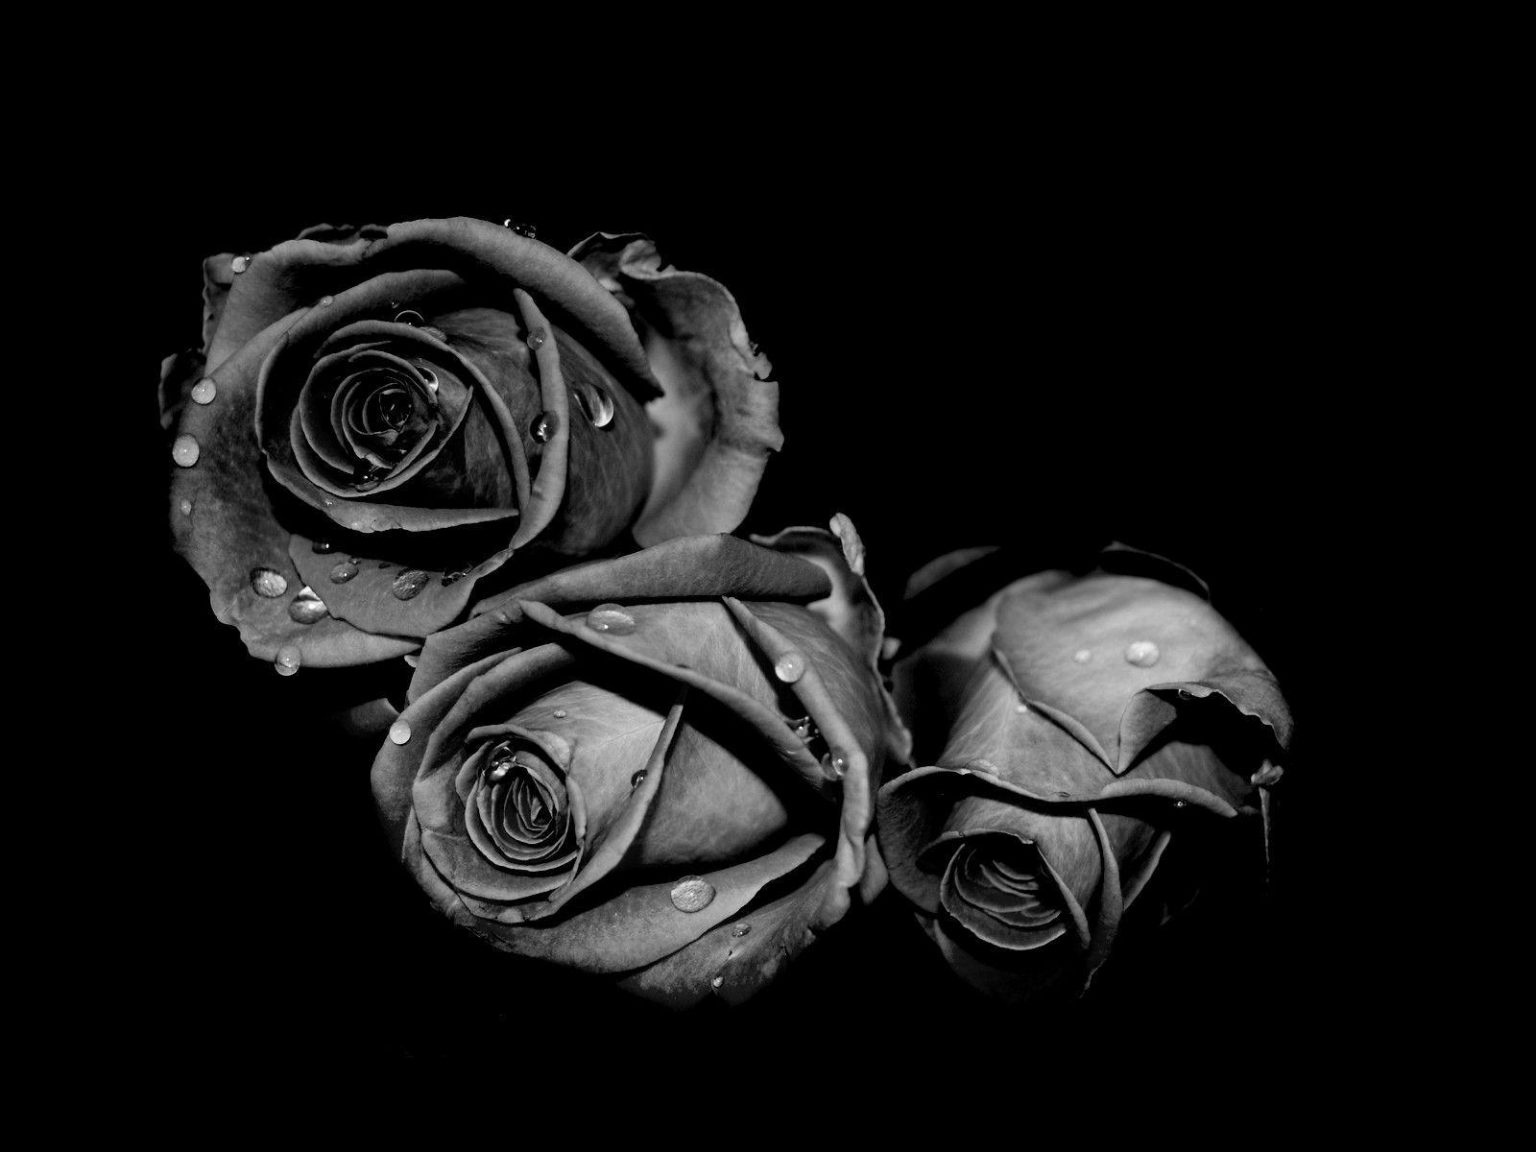 Cho mình ảnh hoa hồng đen hoặc cô gái và hoa hồng đen cũng được nha    askfmhttpsaskfmanhthucandep